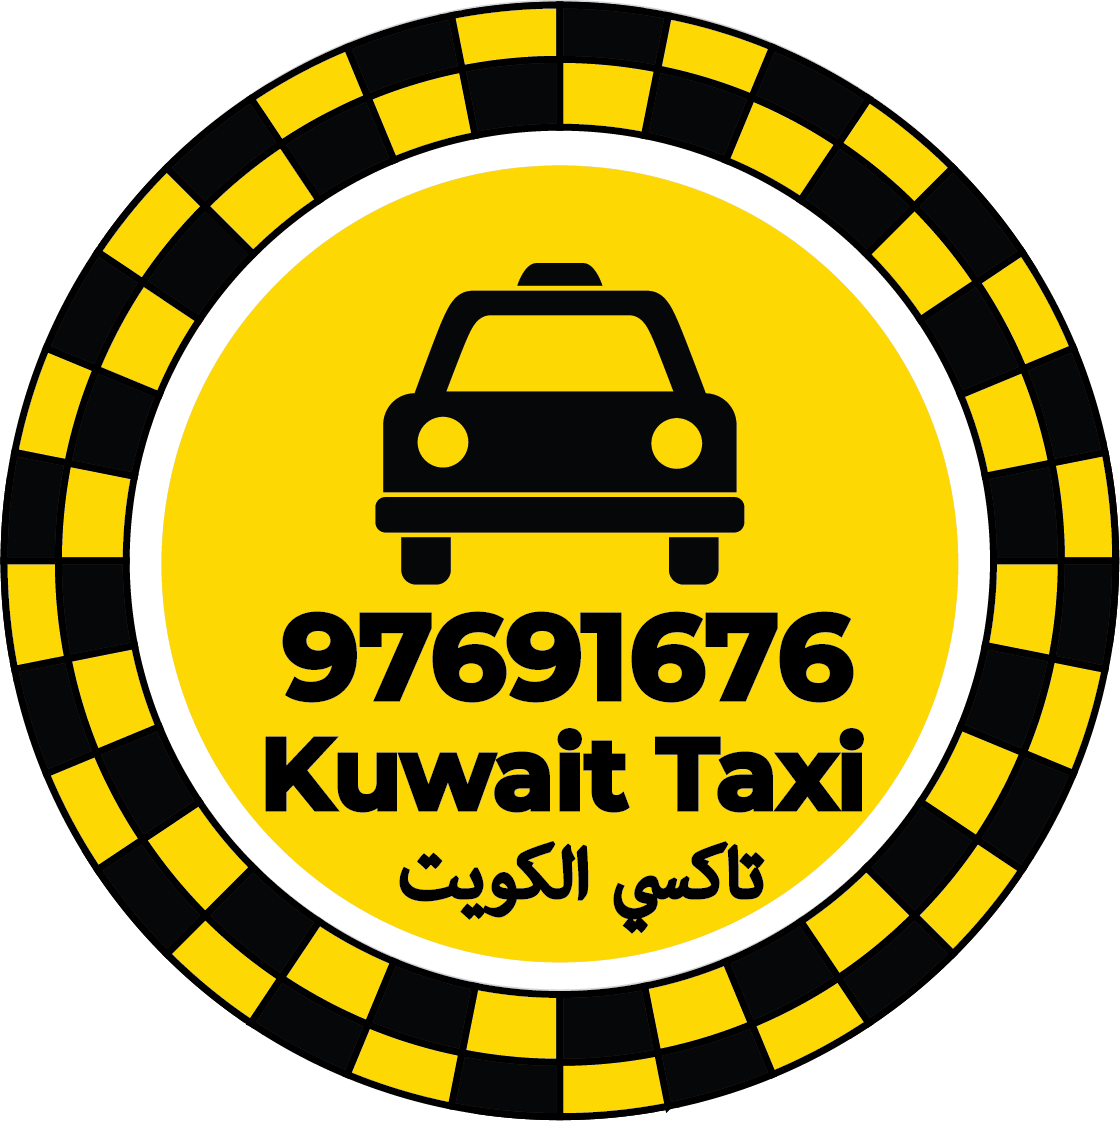 تاكسي المنصورية 97691676 – رقم تاكسي في المنصورية